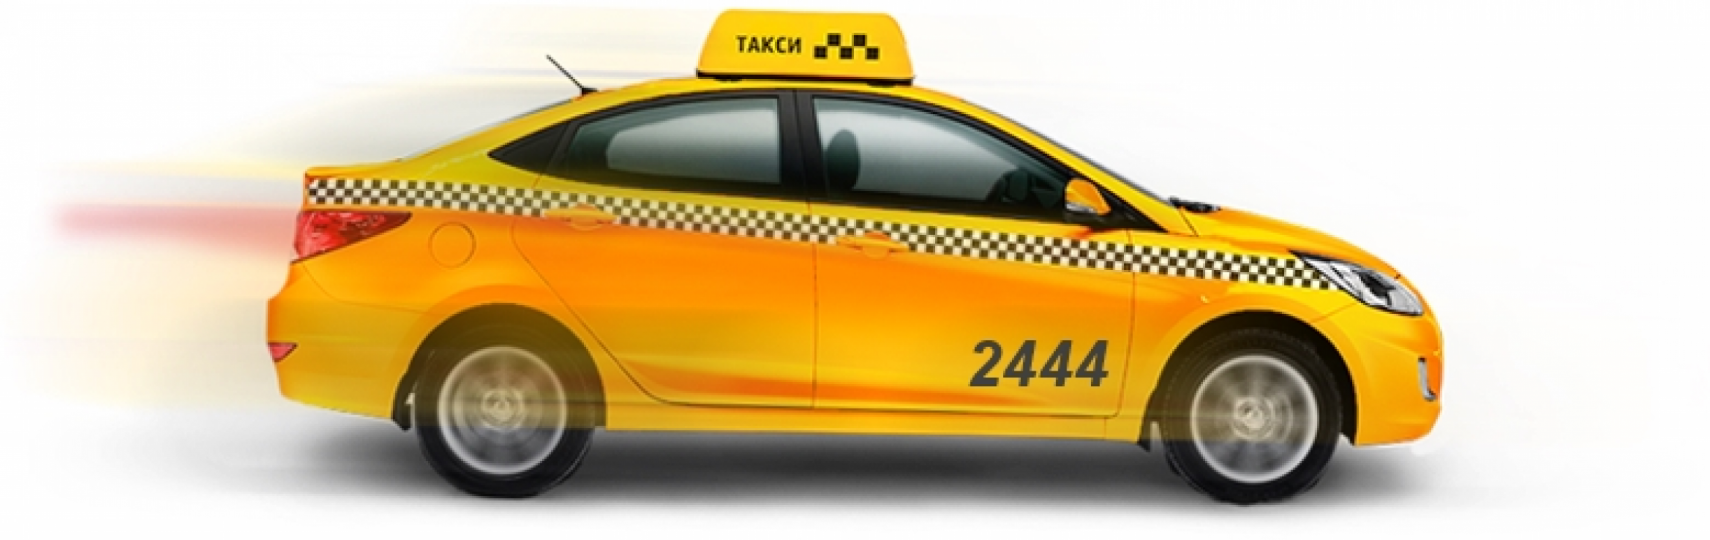 Такси без фона. Машина такси сбоку. Такси вид с боку. Городское такси на прозрачном фоне. Эконом такси машины.